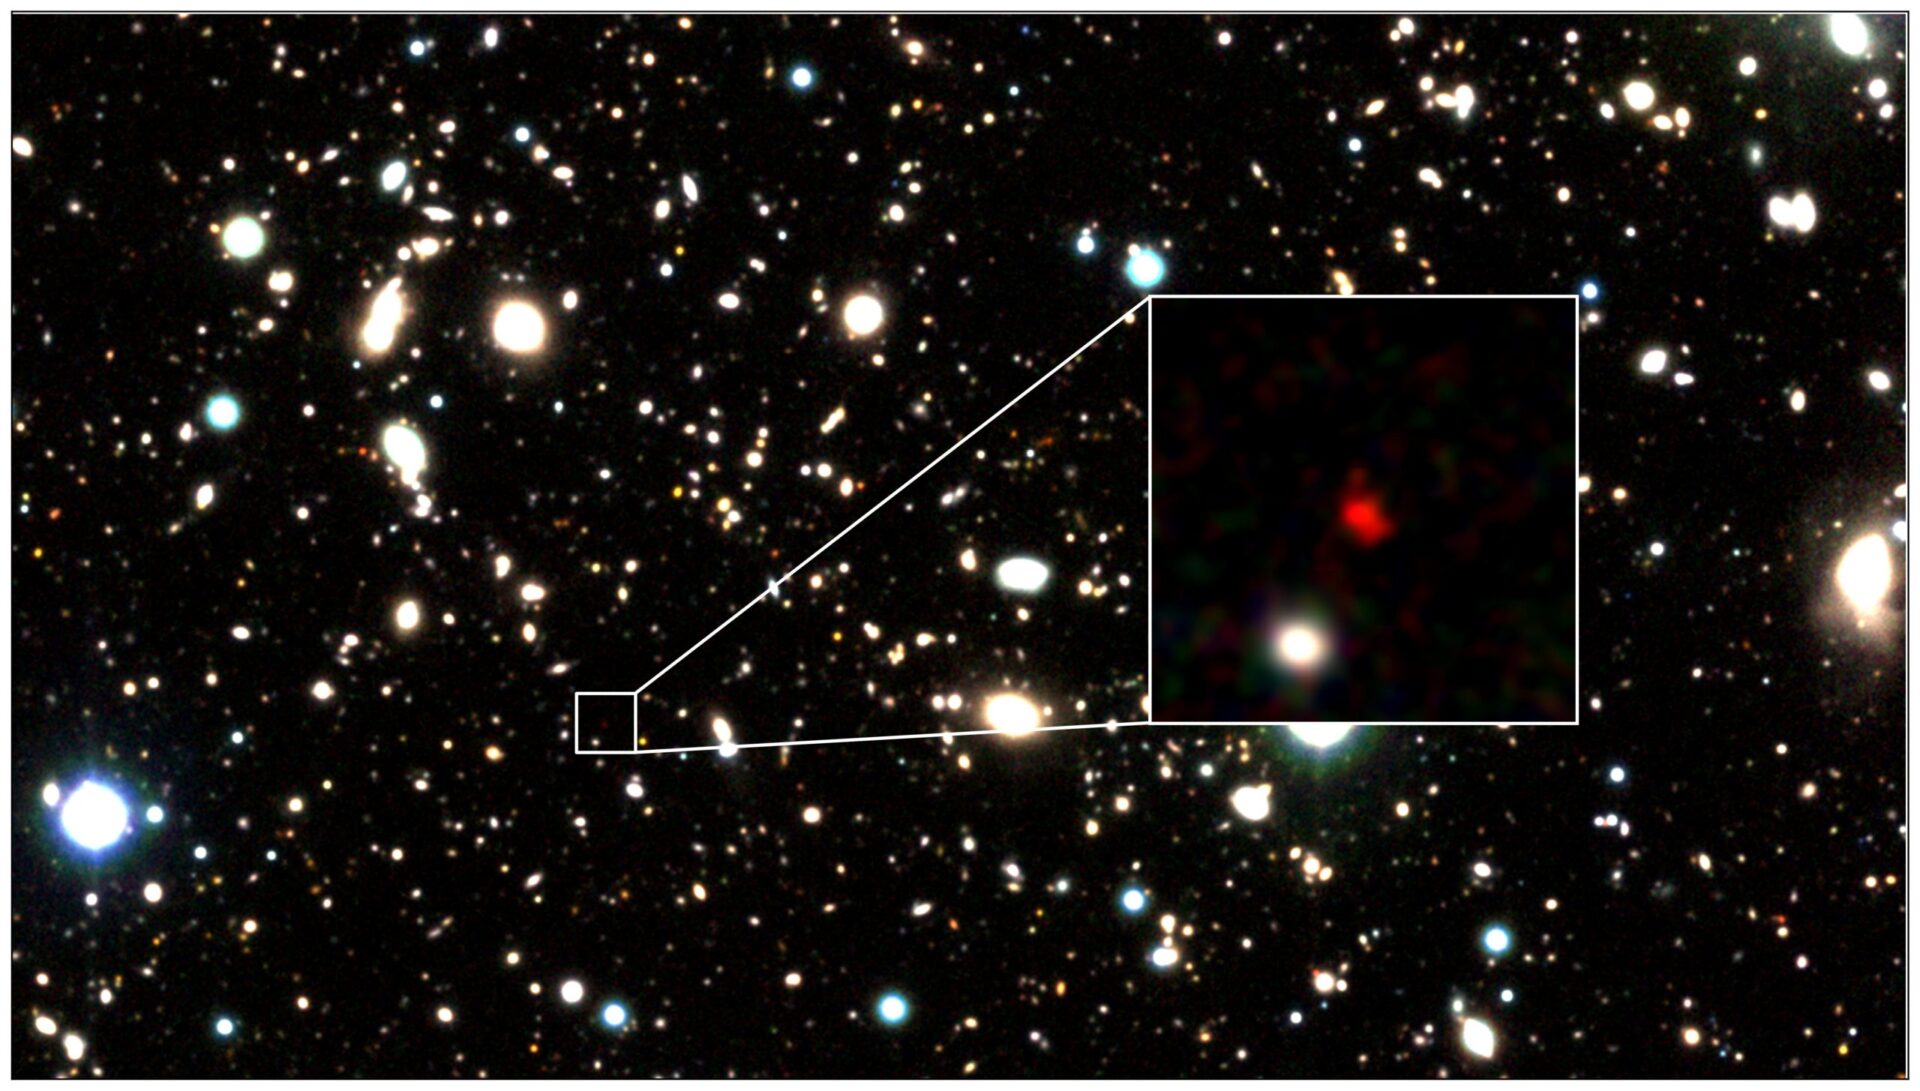 <p>Imagen de tres colores de HD1, la candidata a galaxia más distante hasta la fecha, creada con datos del telescopio VISTA. El objeto rojo en el centro de la imagen ampliada es HD1. Crédito: Harikane et al.</p>
